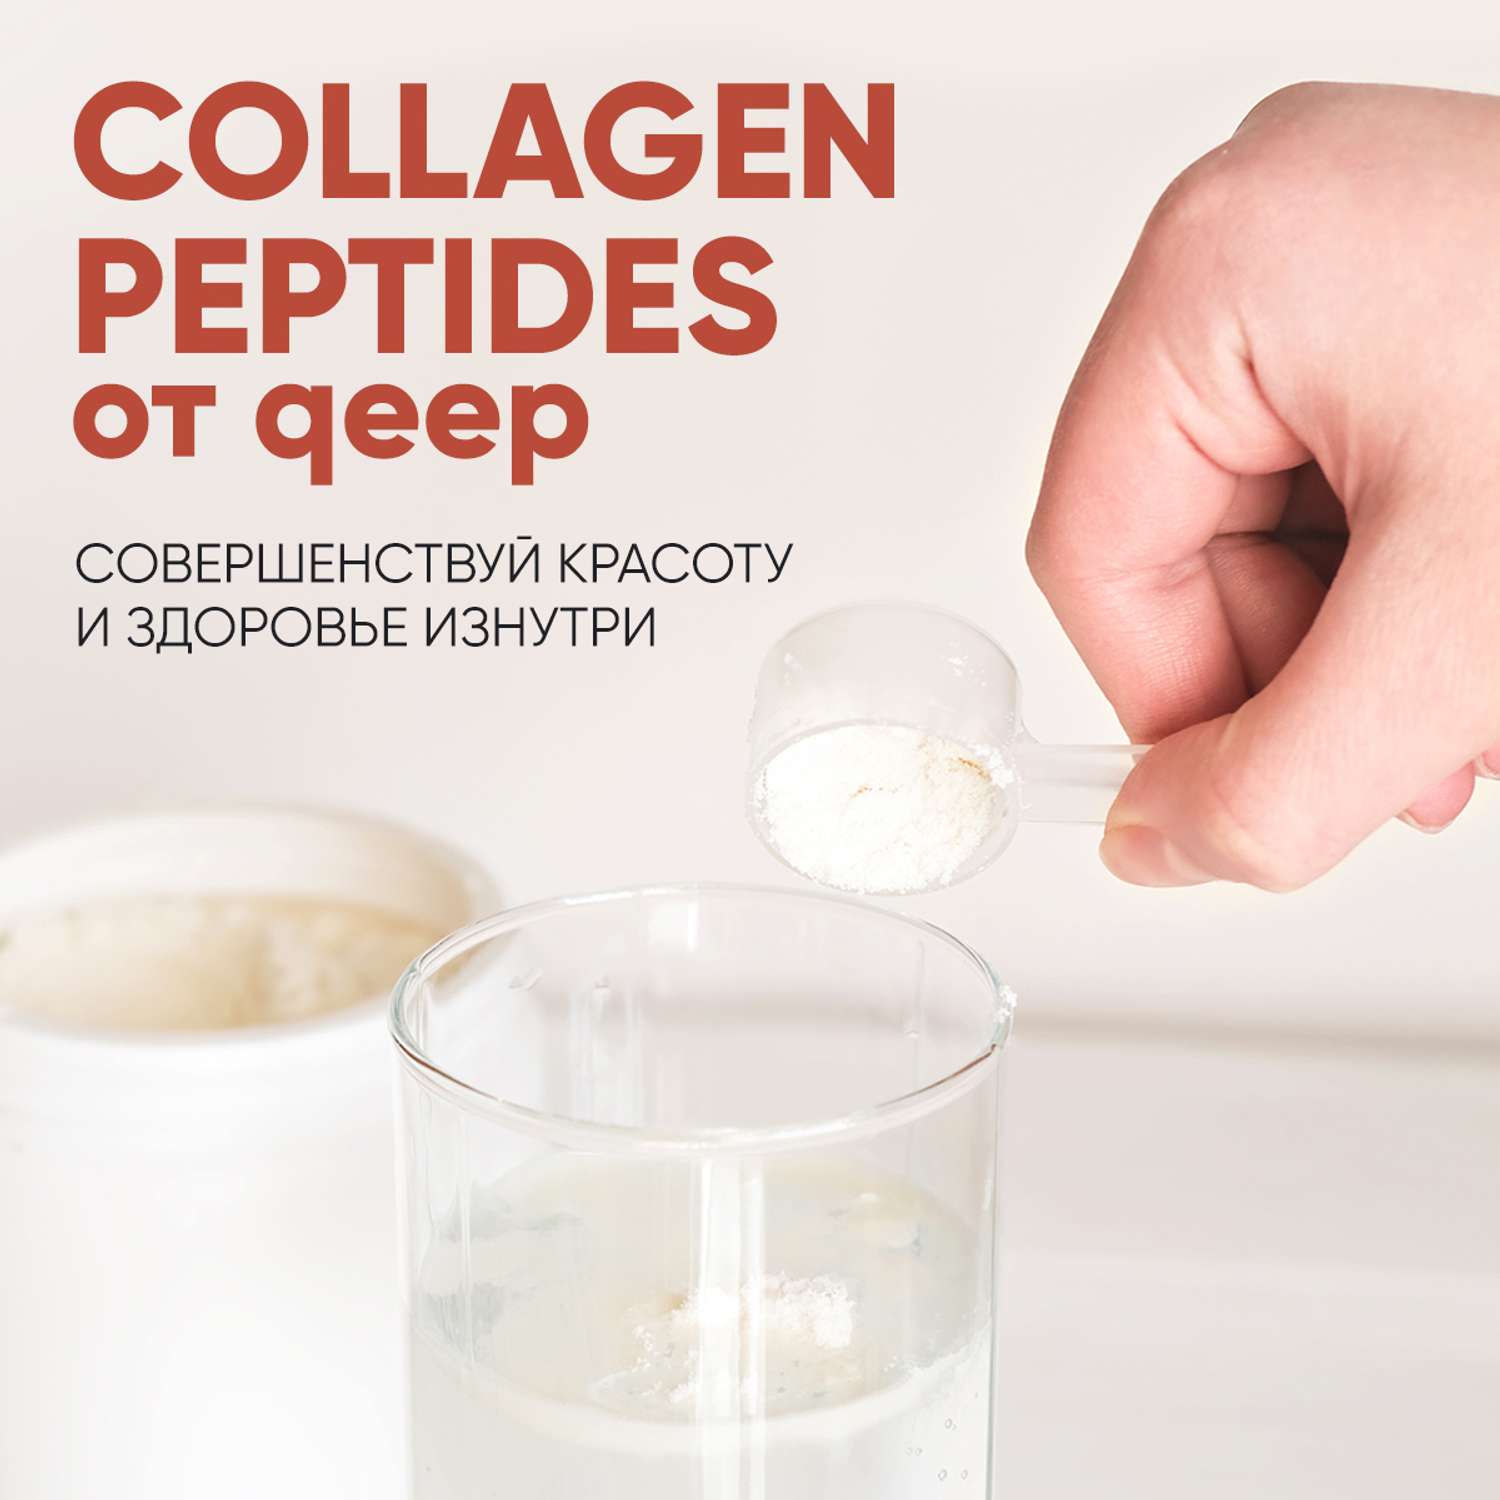 Коллаген порошок qeep Говяжий коллаген с витамином C collagen peptides порошок - фото 8